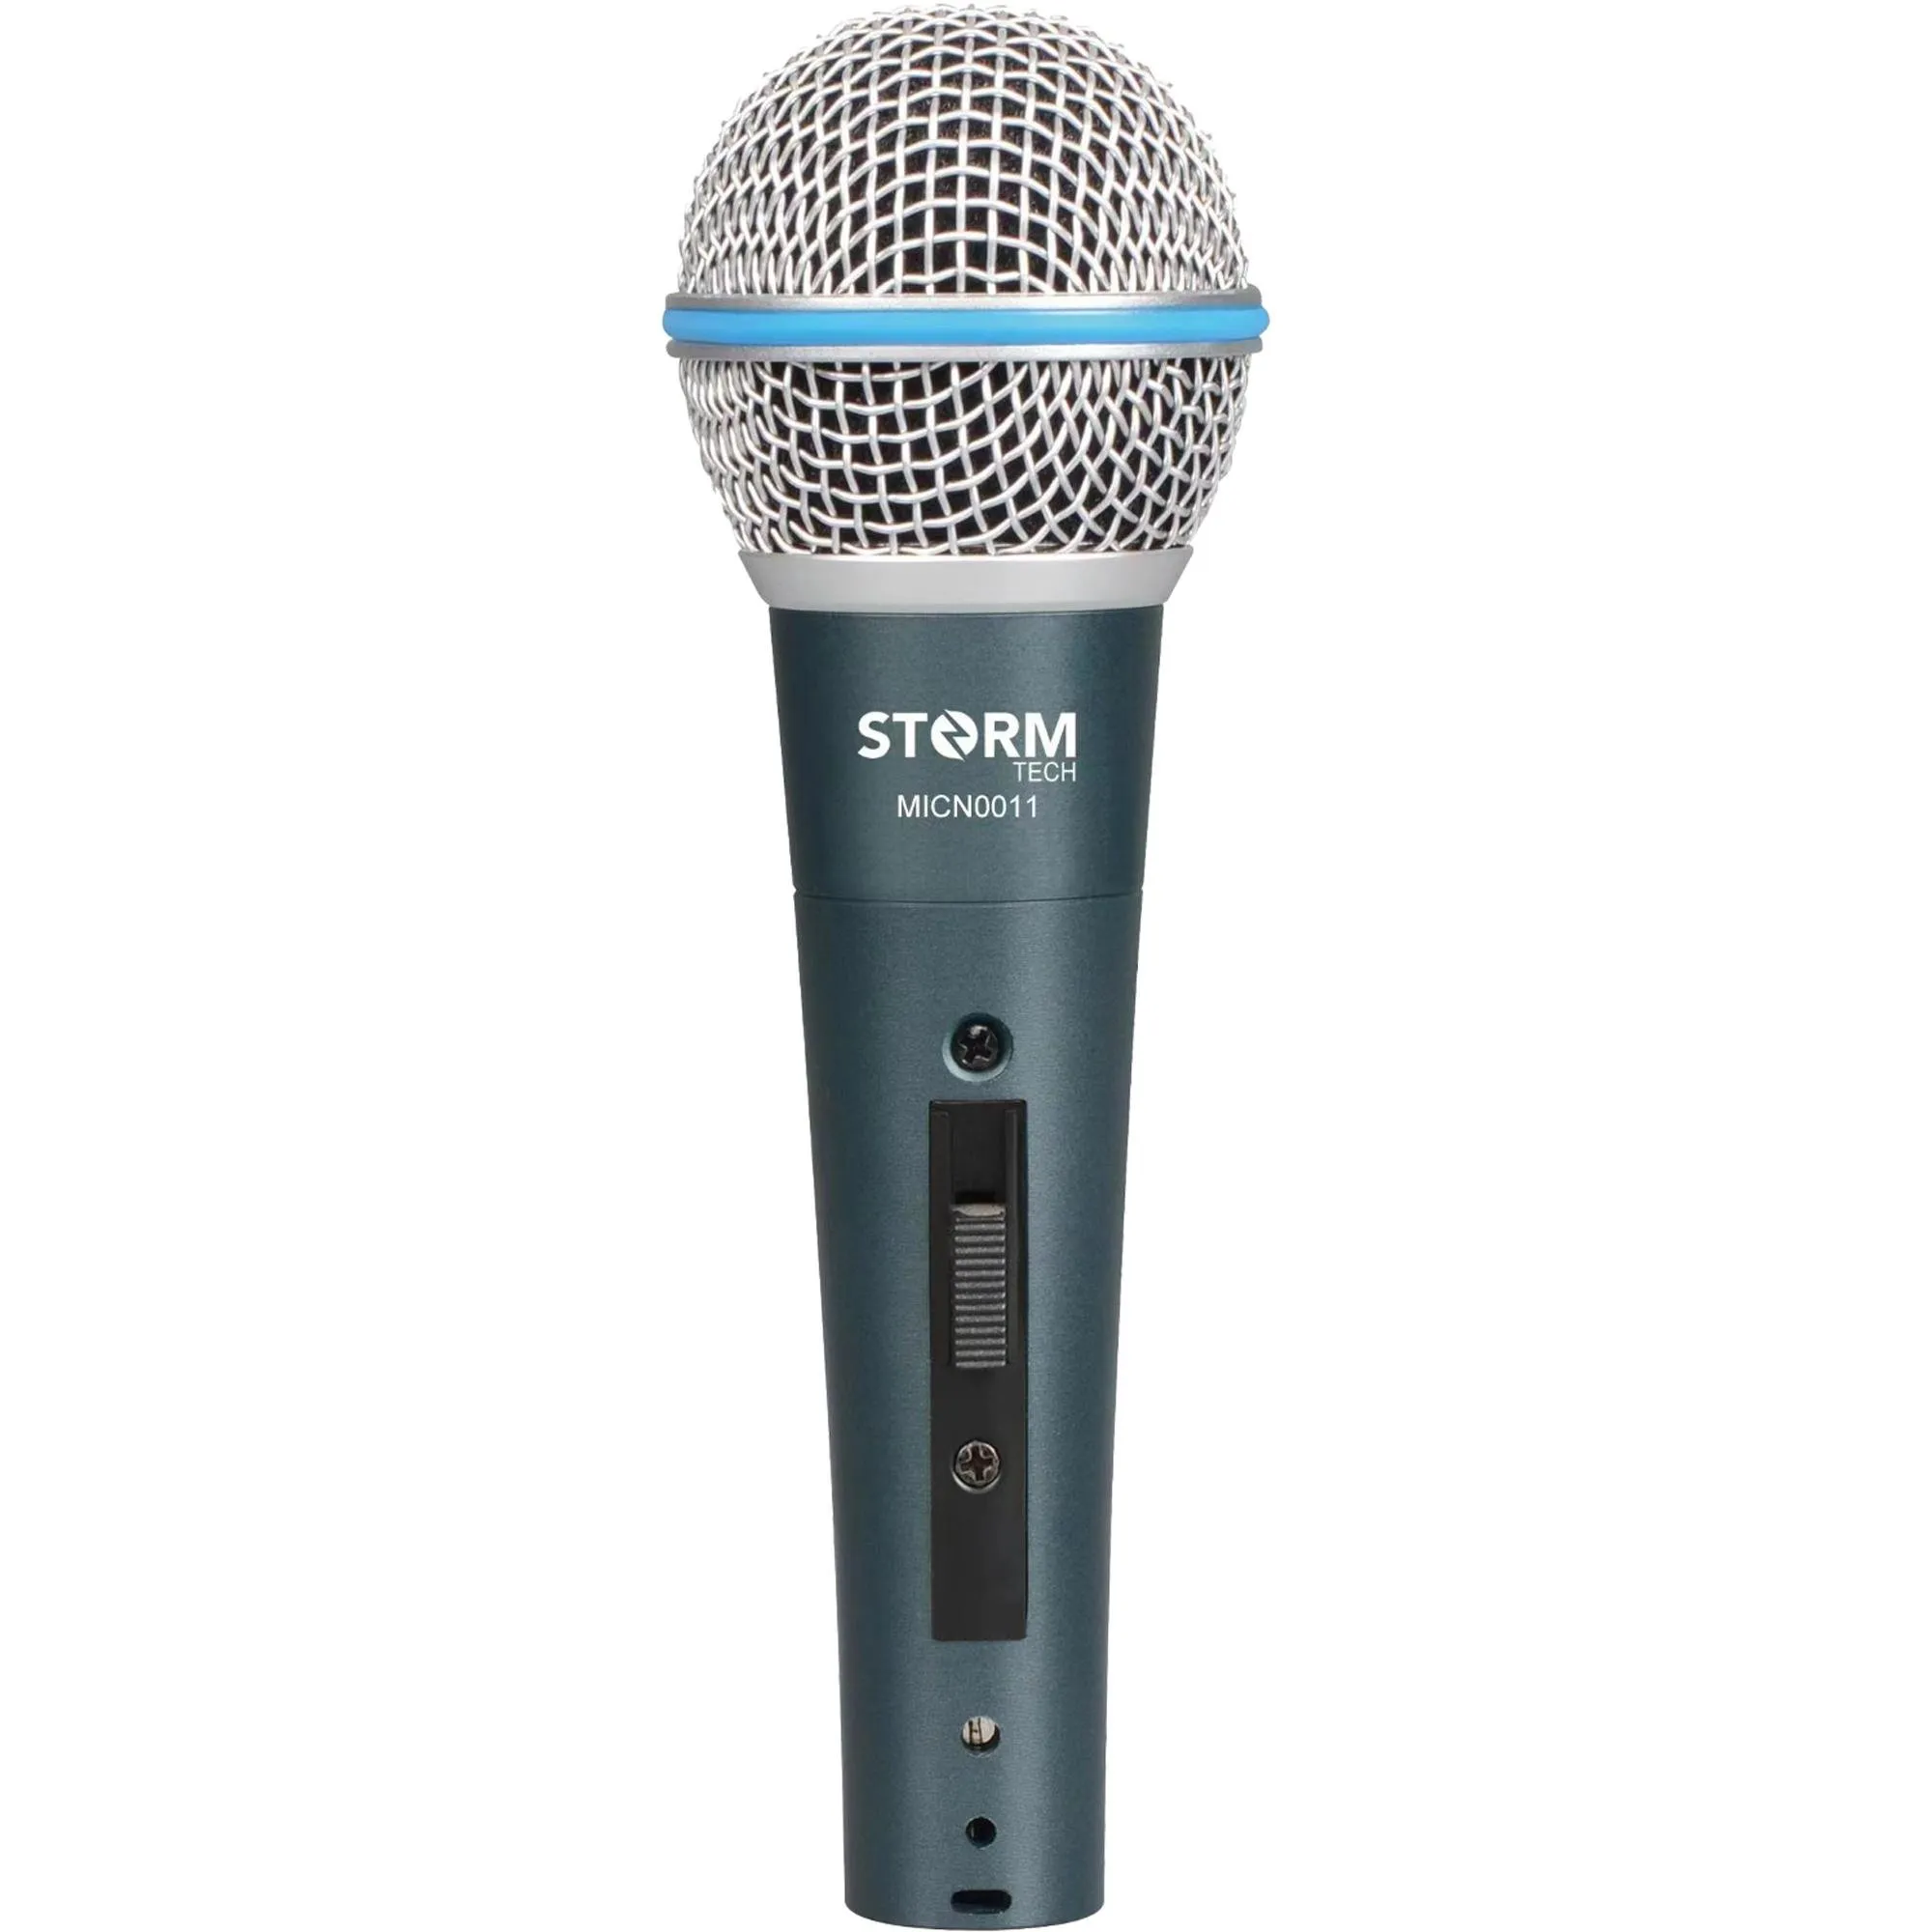 Microfone Com Fio Storm MICN0011 Verde por 0,00 à vista no boleto/pix ou parcele em até 1x sem juros. Compre na loja Mundomax!